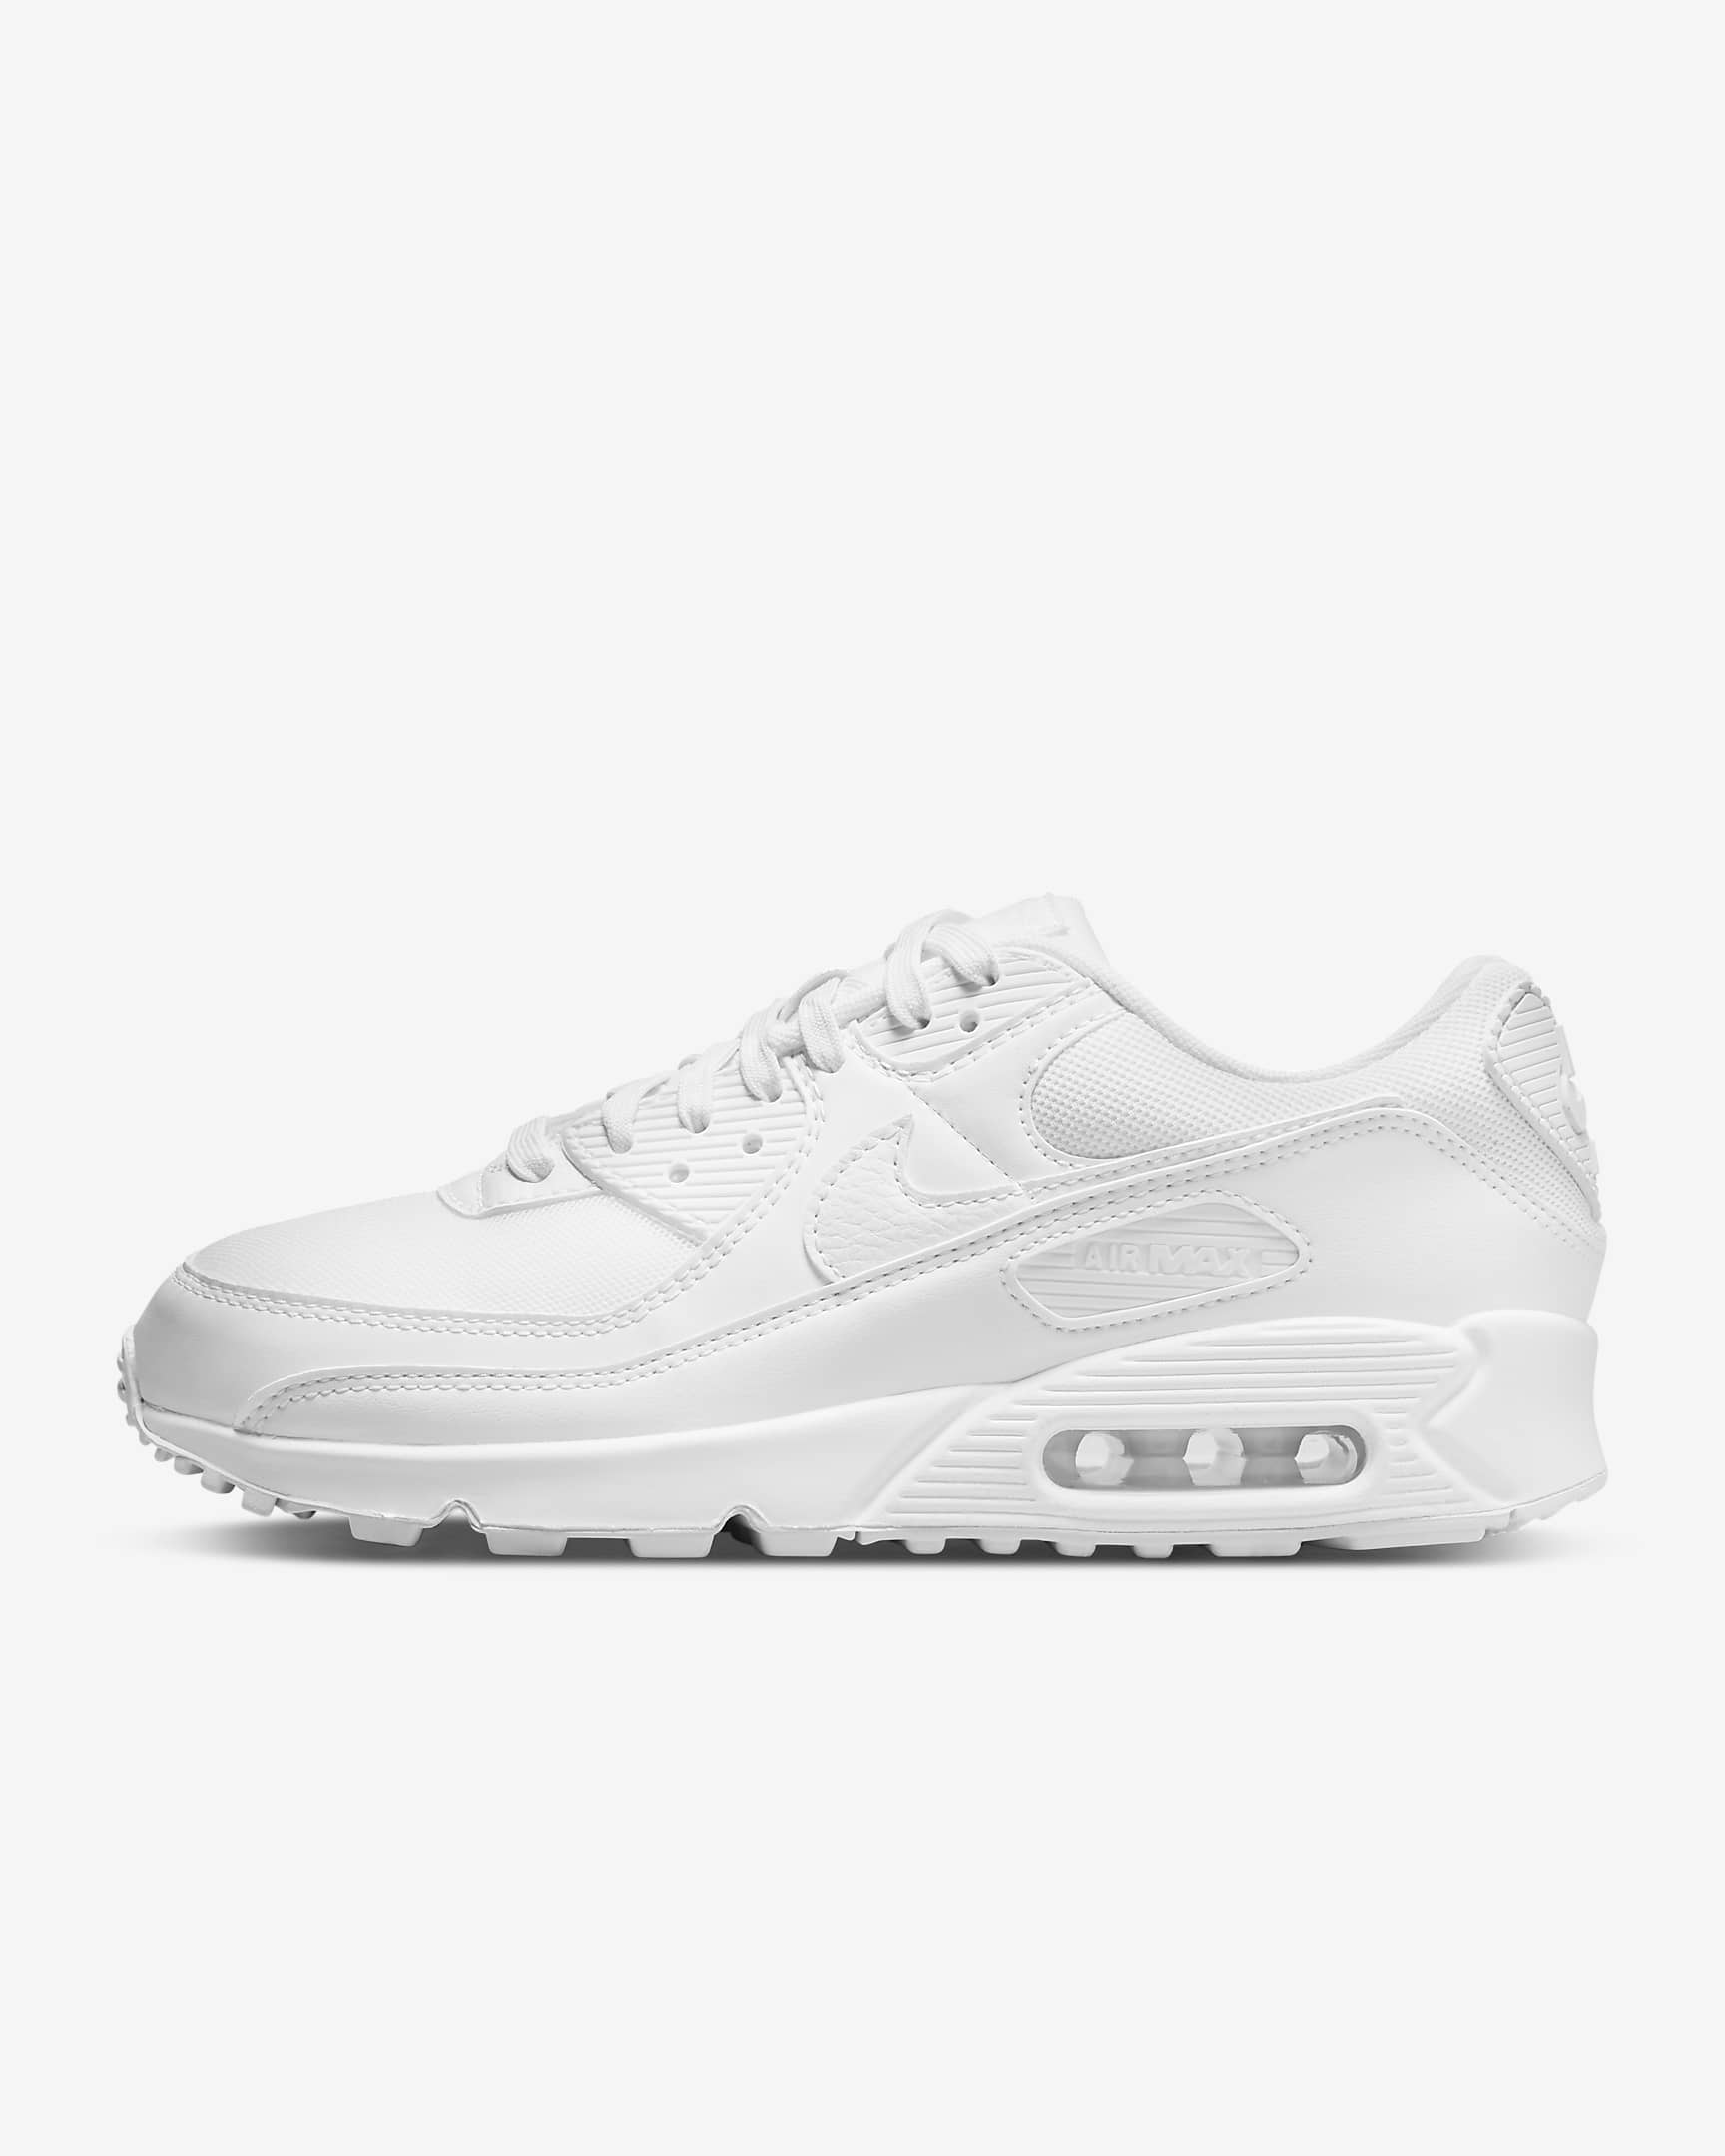 Nike Air Max 90 Women's Shoes - White/White/White